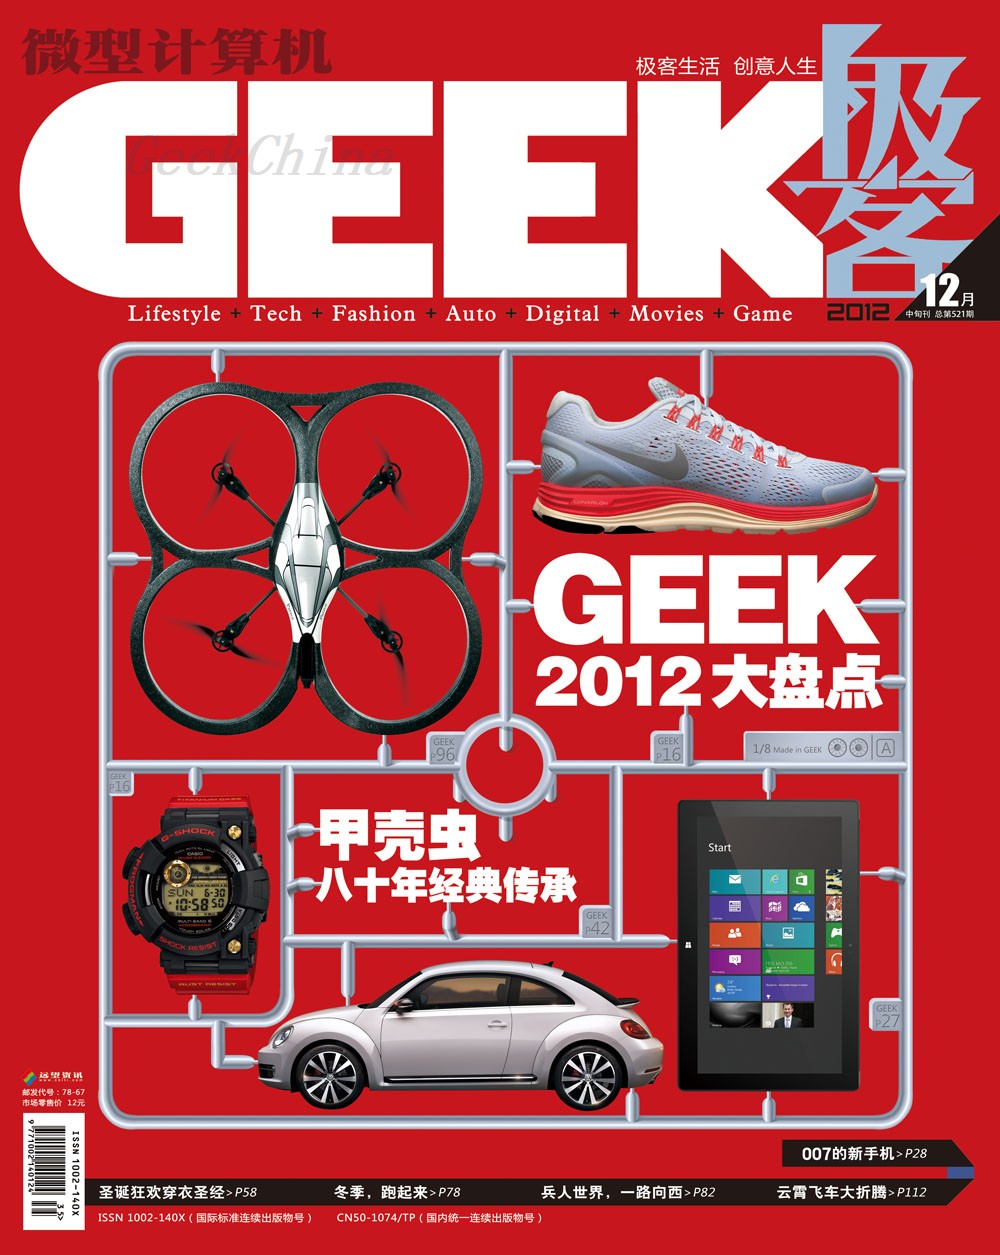 【geek杂志】_geek杂志热销_geek杂志